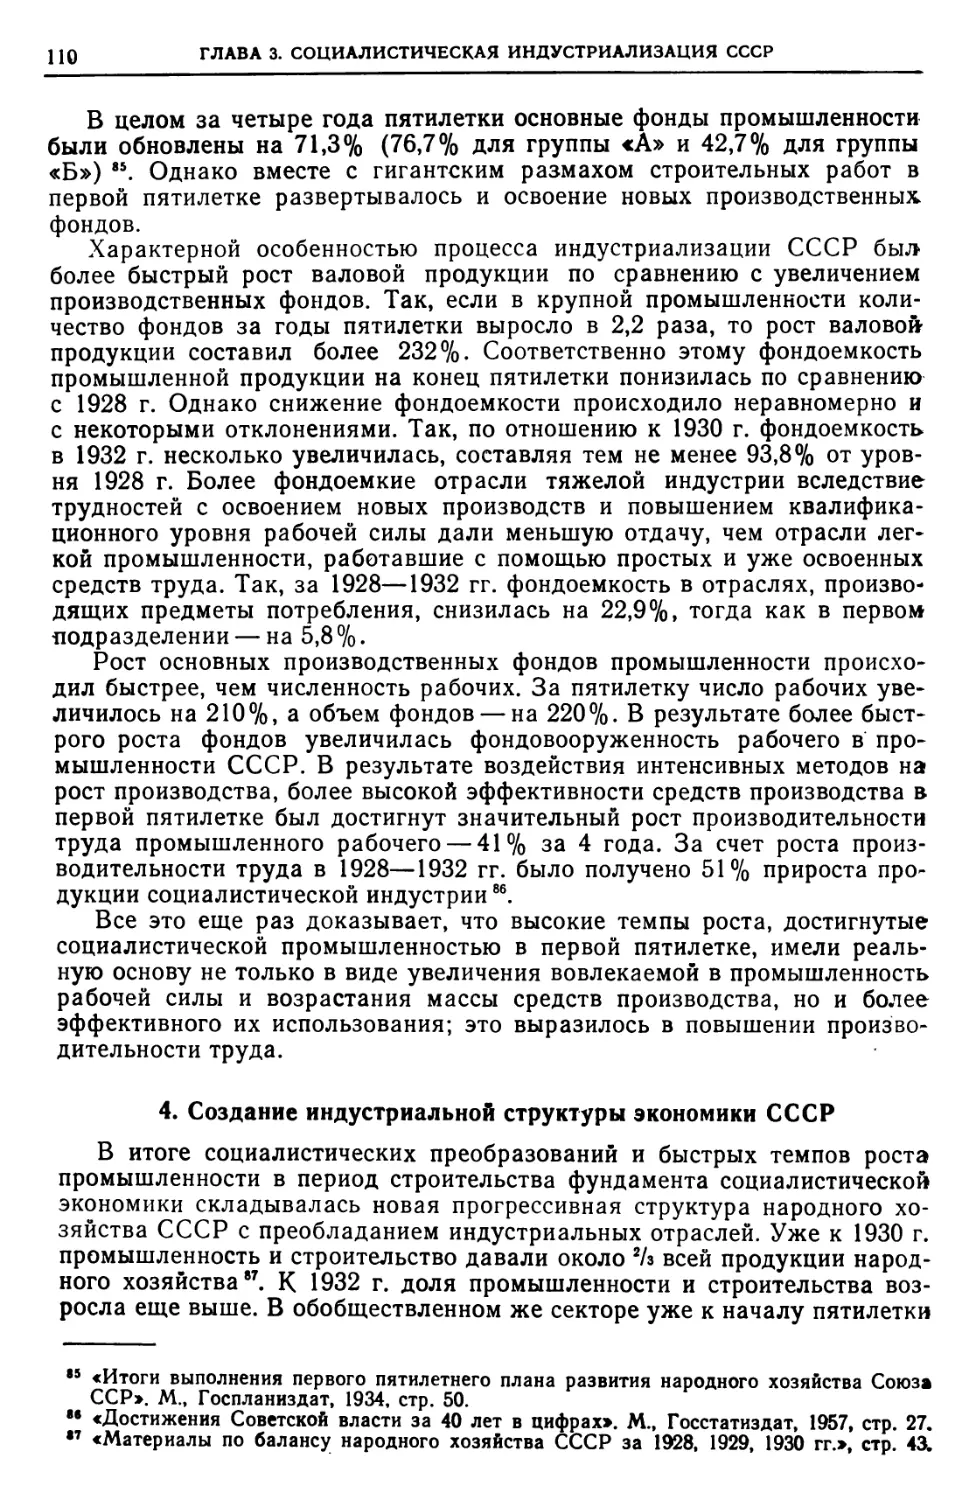 4. Создание индустриальной структуры экономики СССР